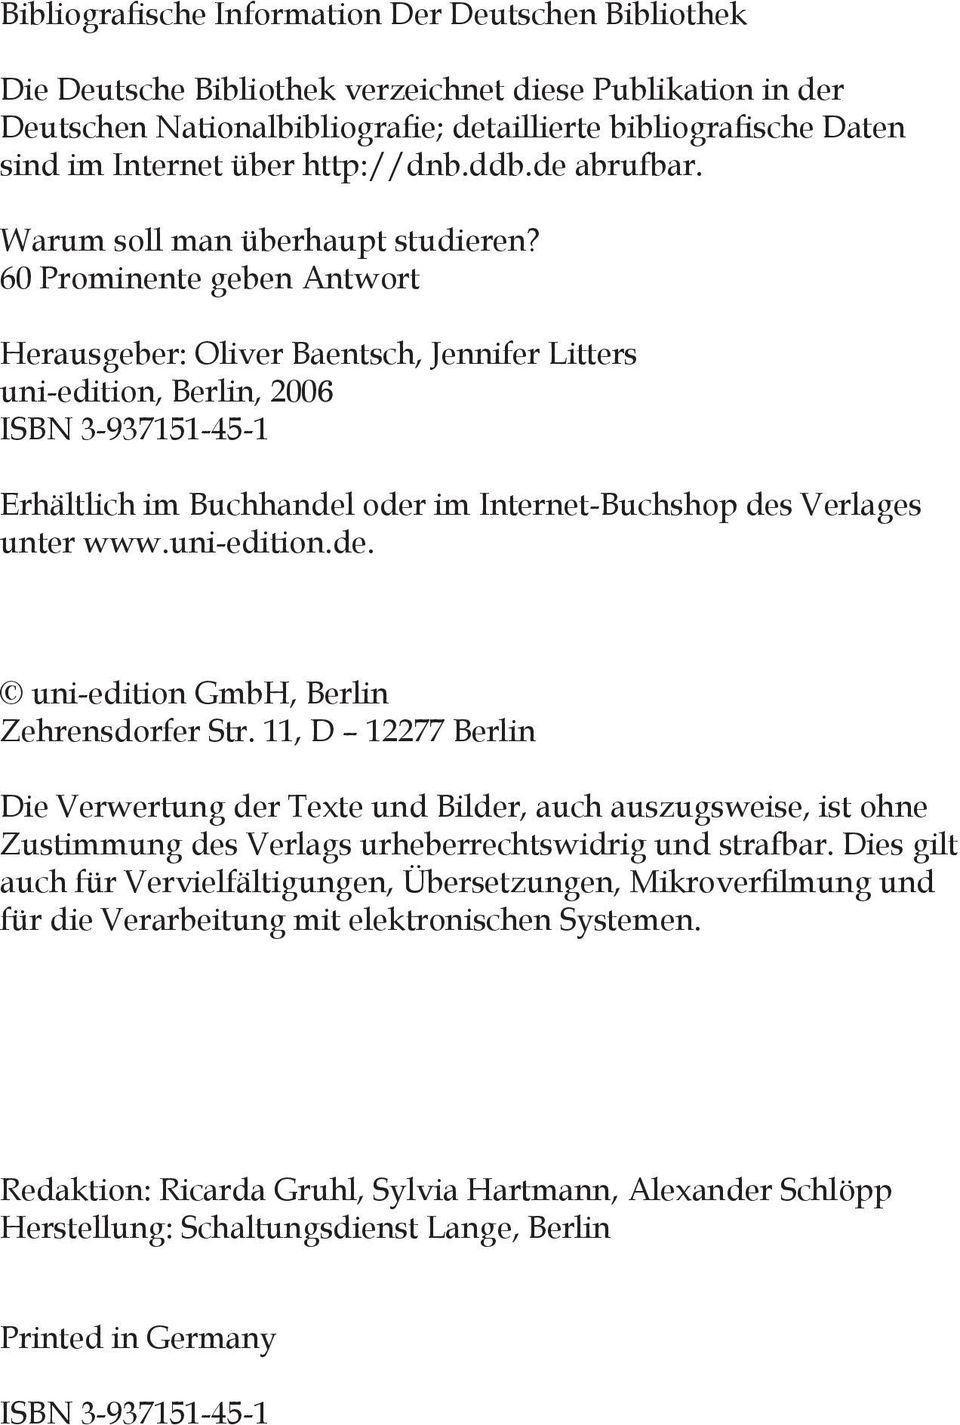 60 Prominente geben Antwort Herausgeber: Oliver Baentsch, Jennifer Litters uni-edition, Berlin, 2006 ISBN 3-937151-45-1 Erhältlich im Buchhandel oder im Internet-Buchshop des Verlages unter www.